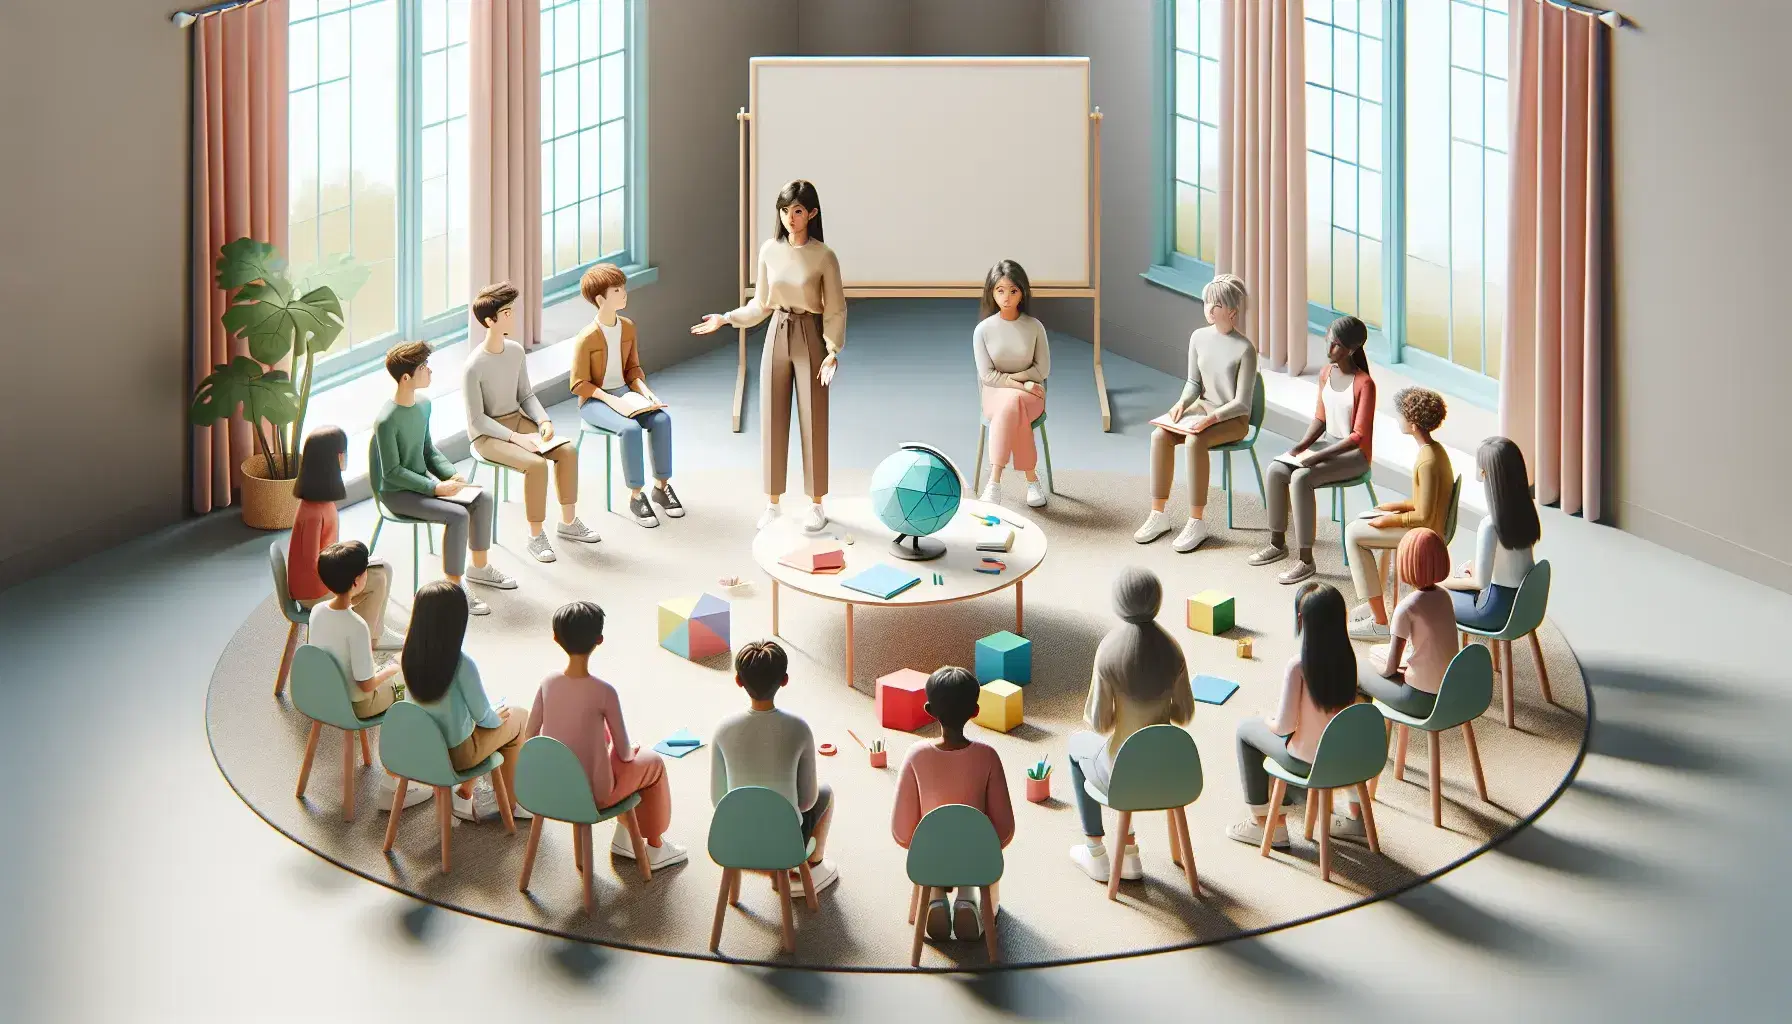 Grupo diverso de estudiantes atentos en semicírculo alrededor de una profesora explicando, con objetos educativos en primer plano y aula iluminada naturalmente.